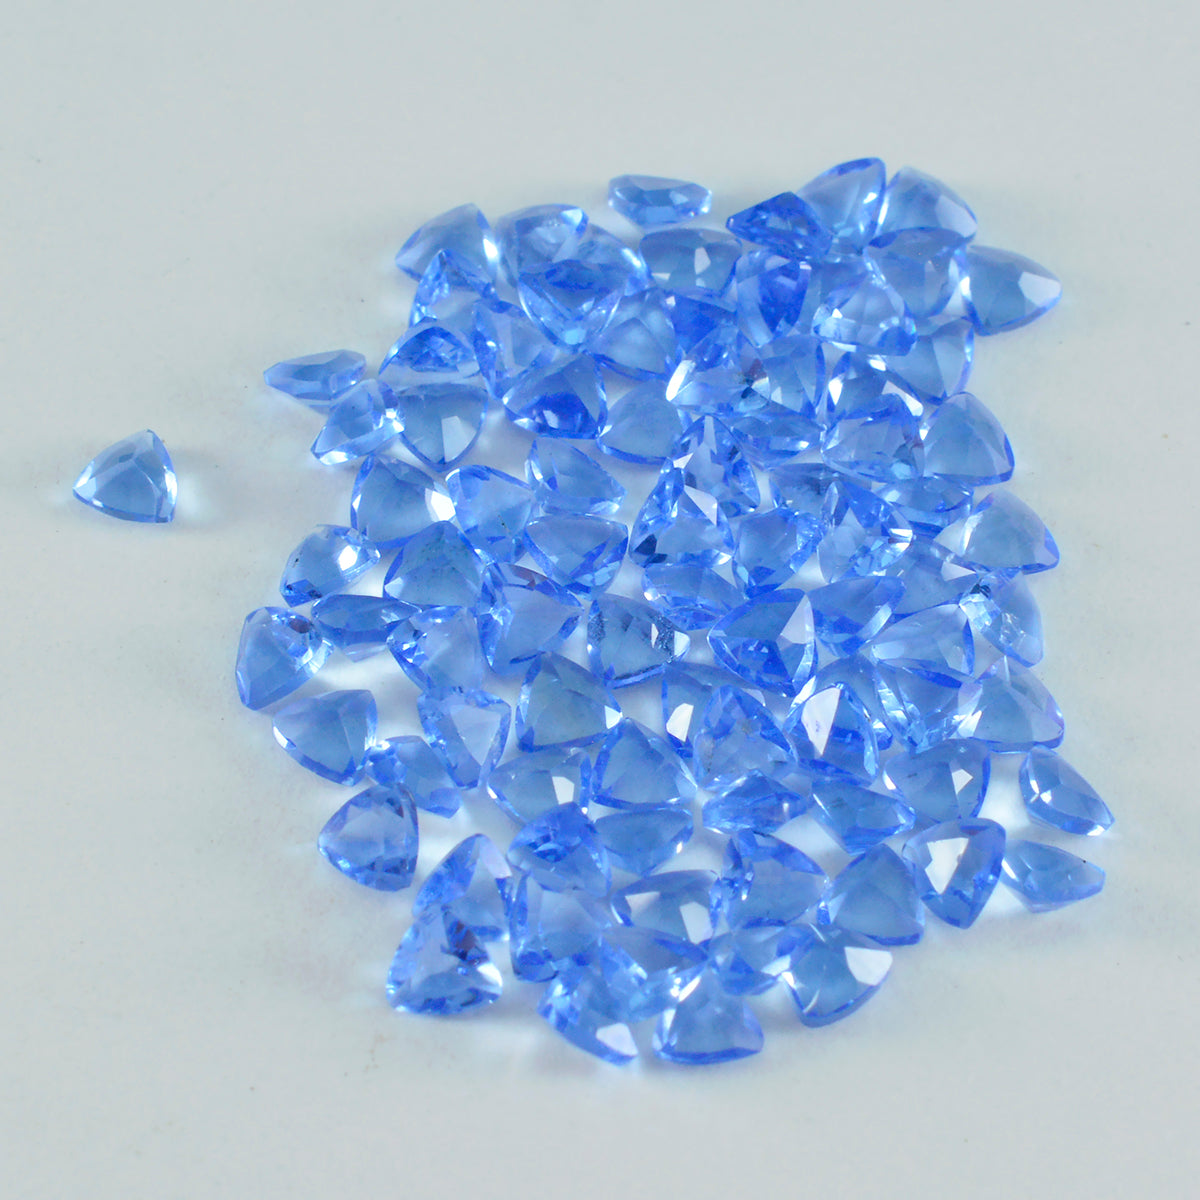 riyogems 1 шт. синий сапфир cz ограненный 4x4 мм форма триллиона красивый качественный драгоценный камень